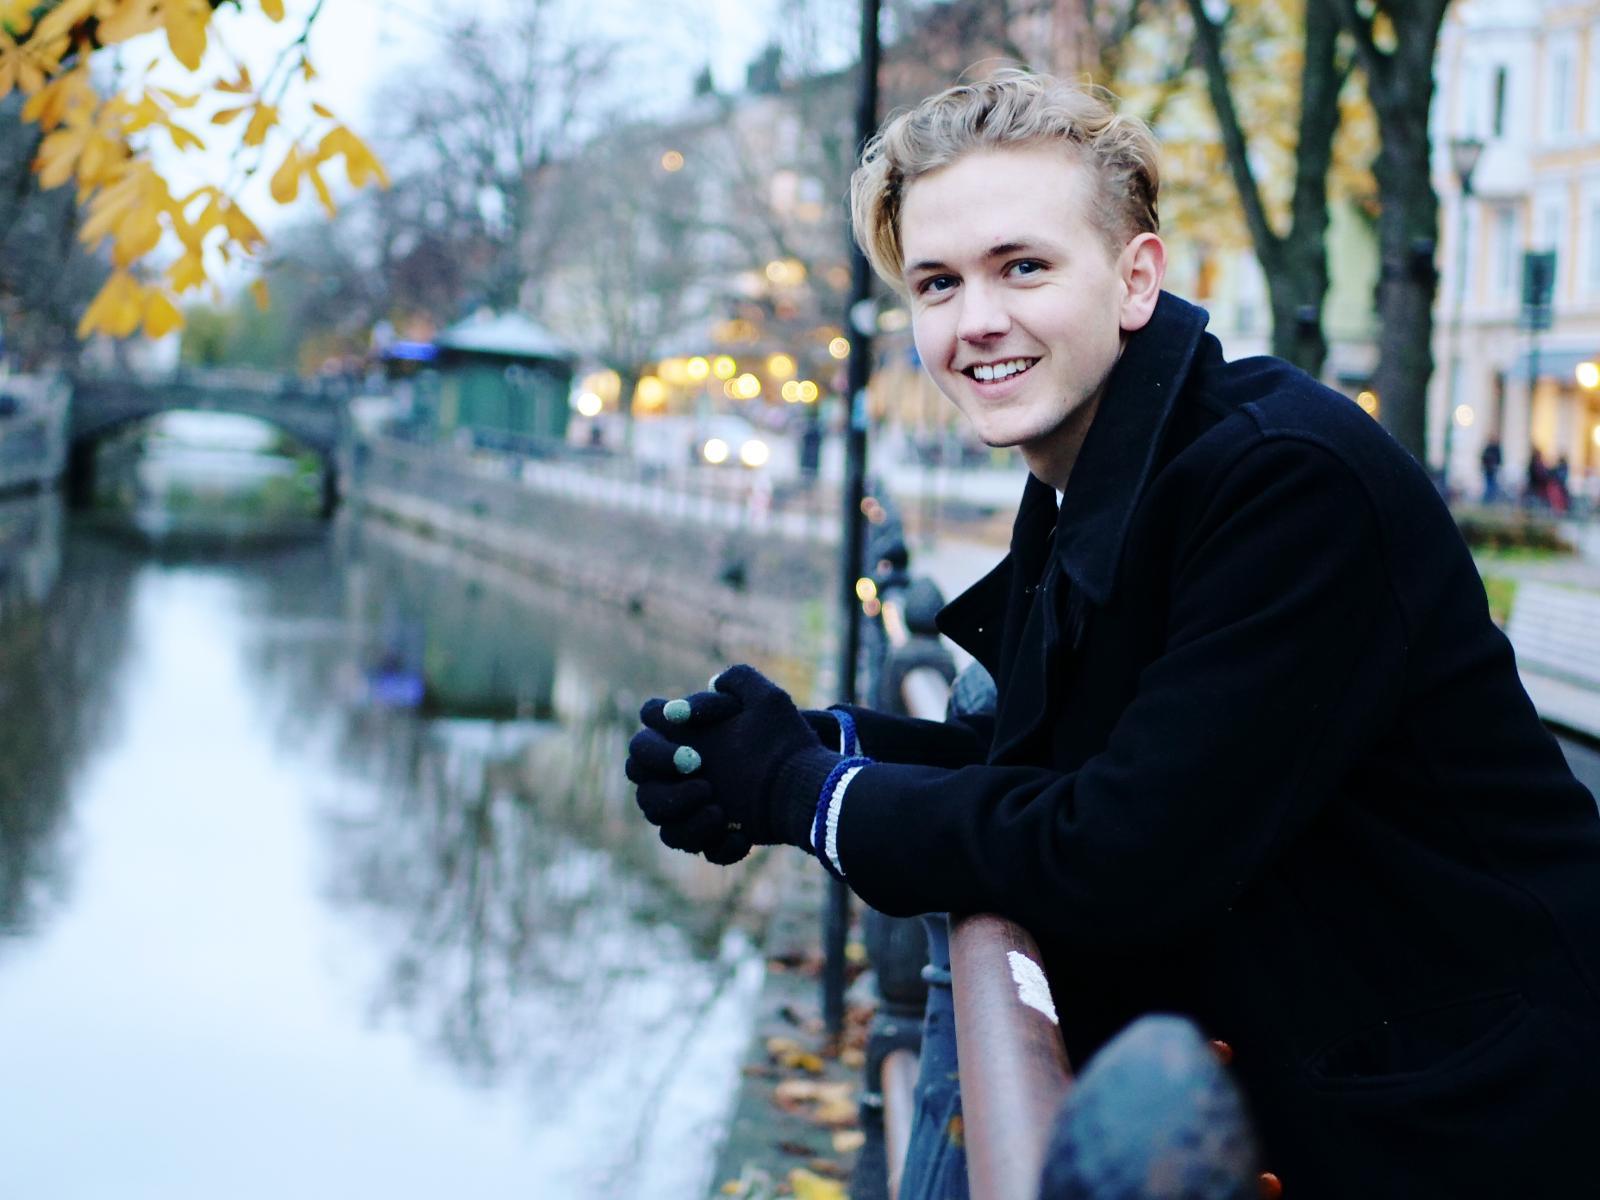 Årets förebild, kandidat 2: Johannes Widlund vill inspirera till en mer hållbar livsstil